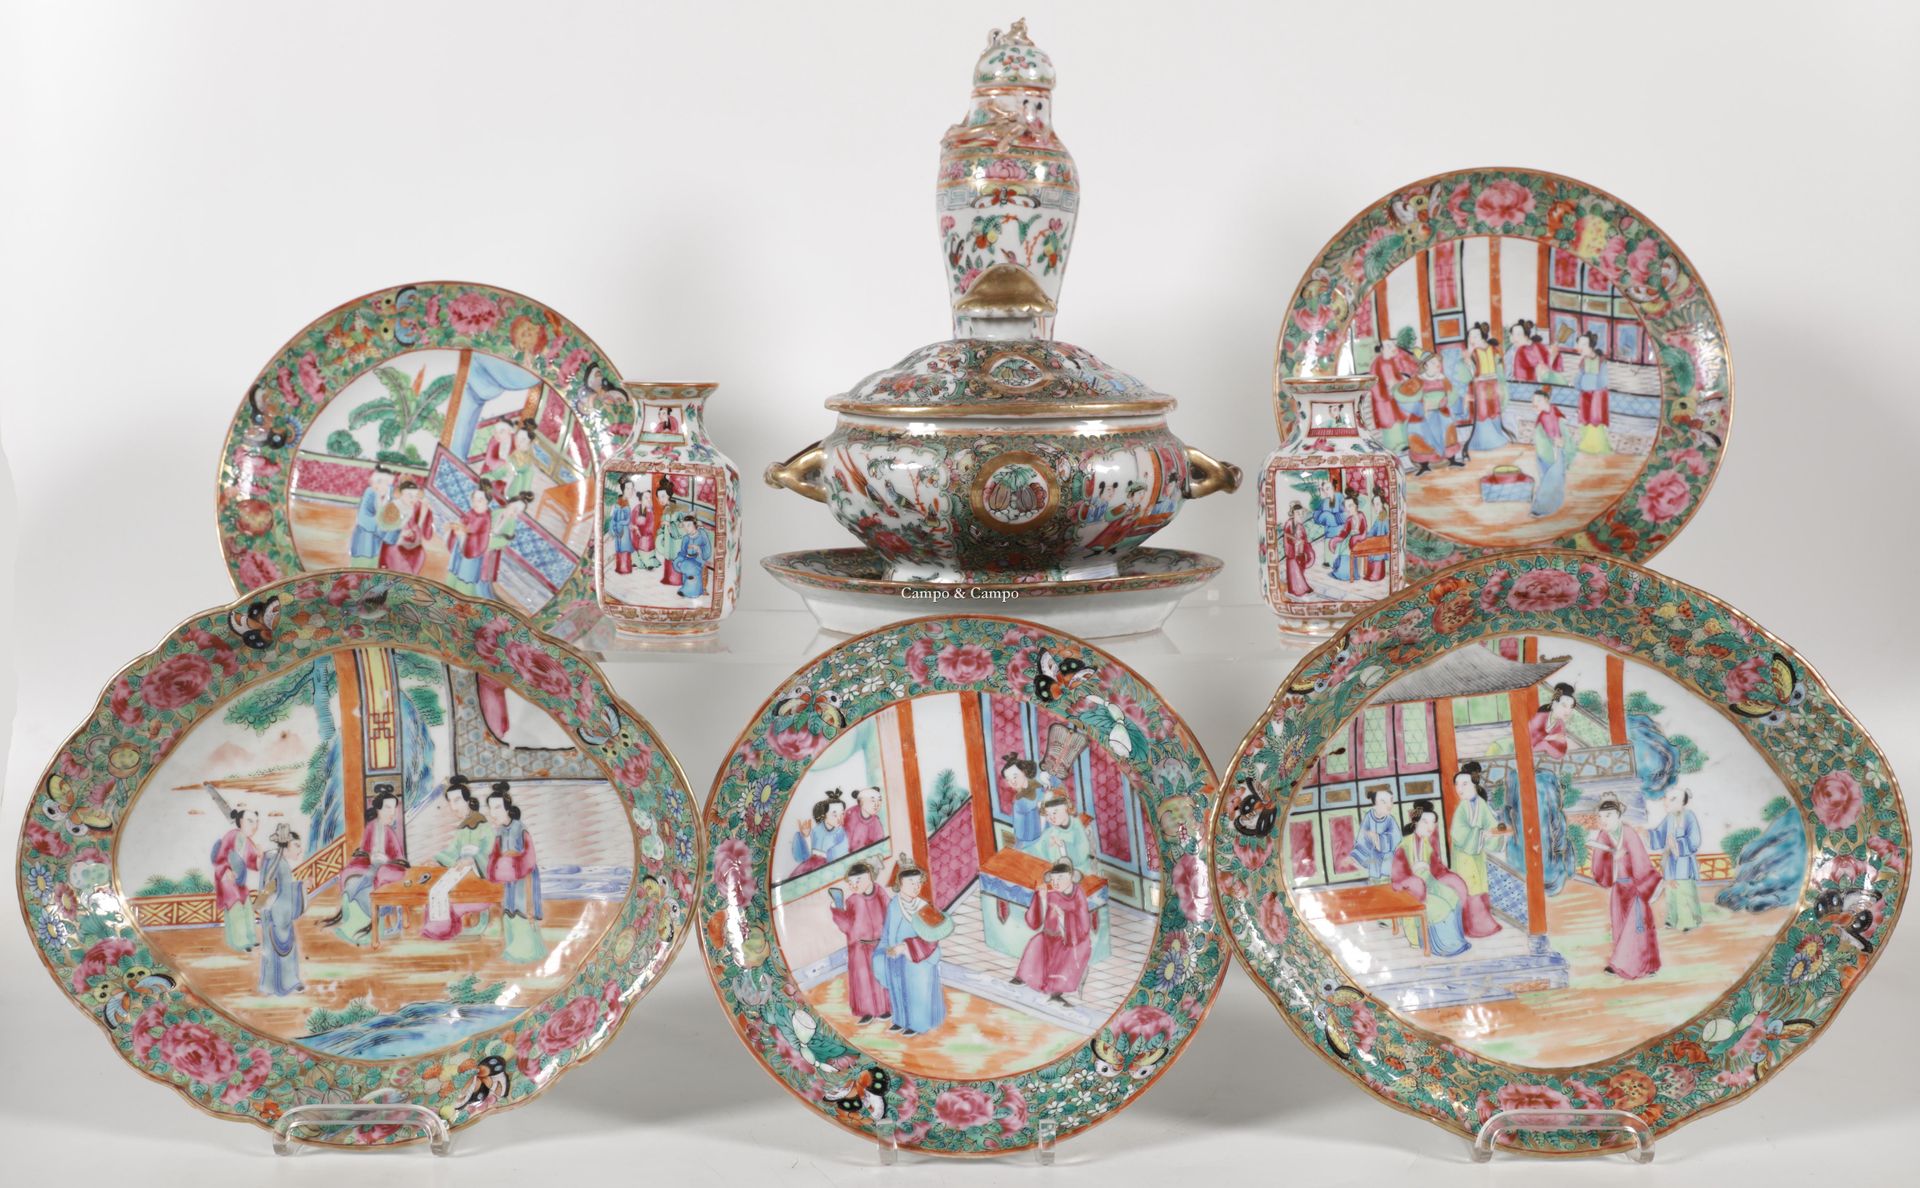 VARIA 多样化的广东瓷器，包括两个盘子、两个花瓶、一个小花瓶和一个有盖的陶罐
Lot kanton porselein; drie borden en tw&hellip;